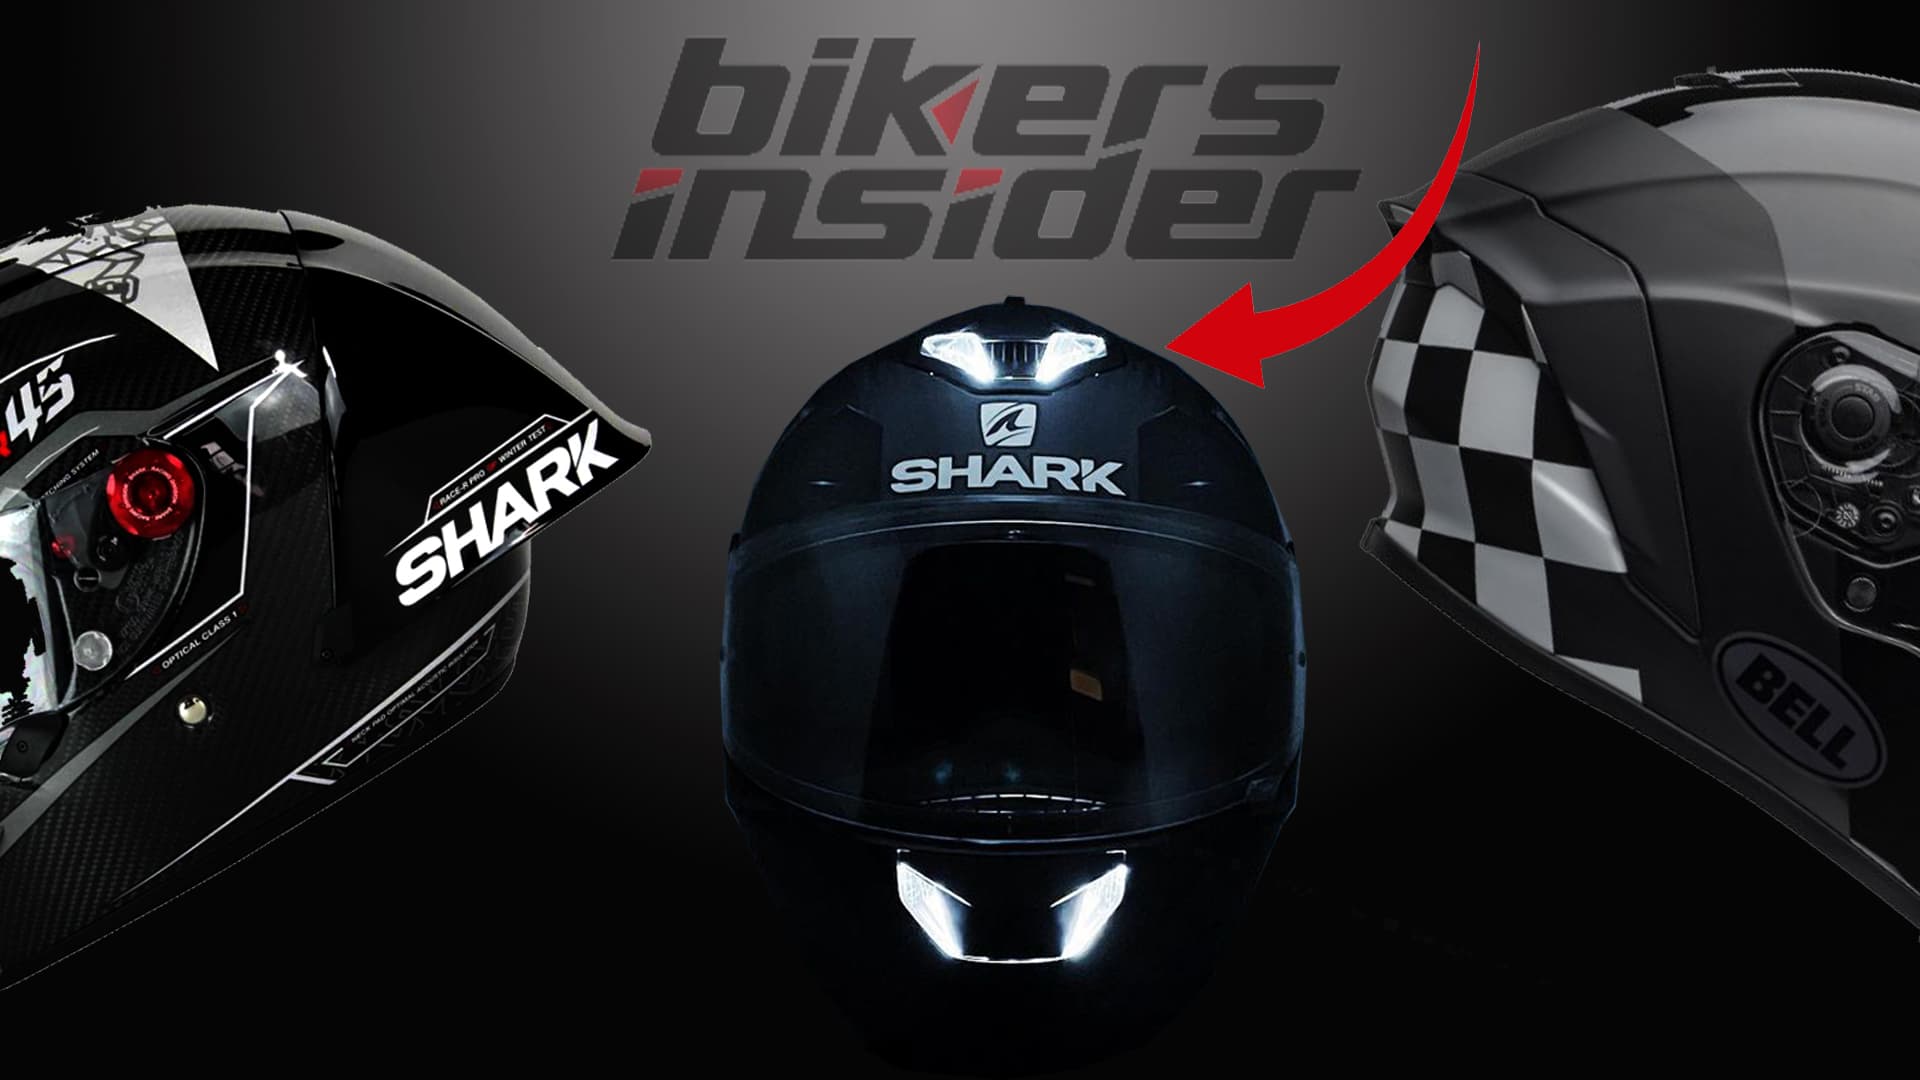 Top 10 Safest Motorcycle Helmets For 2021/2022! Bikers Insider